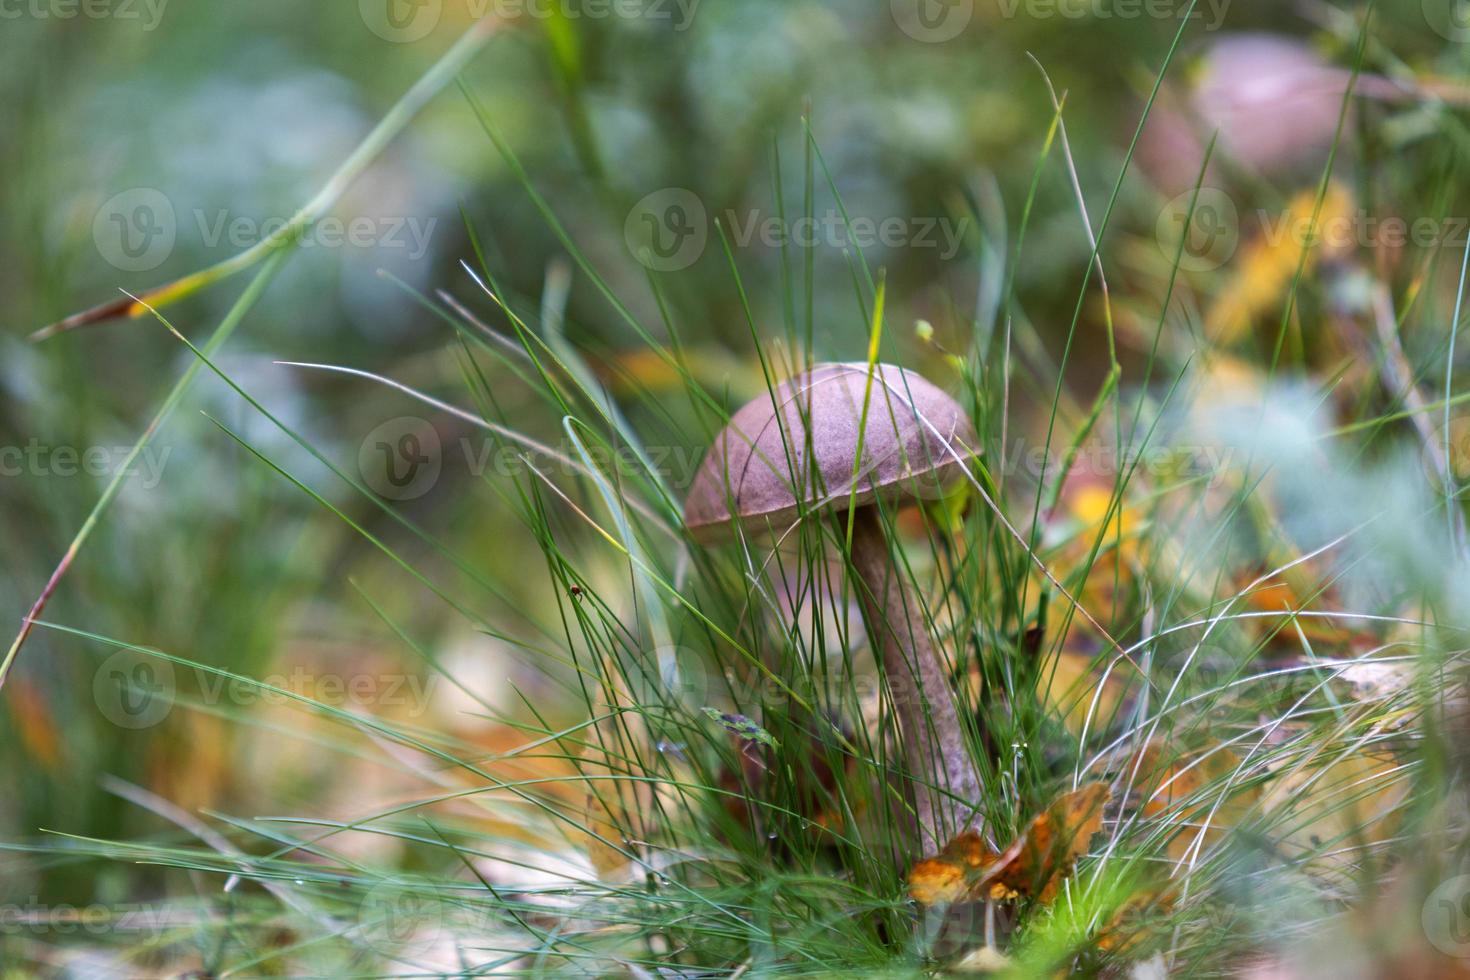 bospaddenstoelen in het gras foto